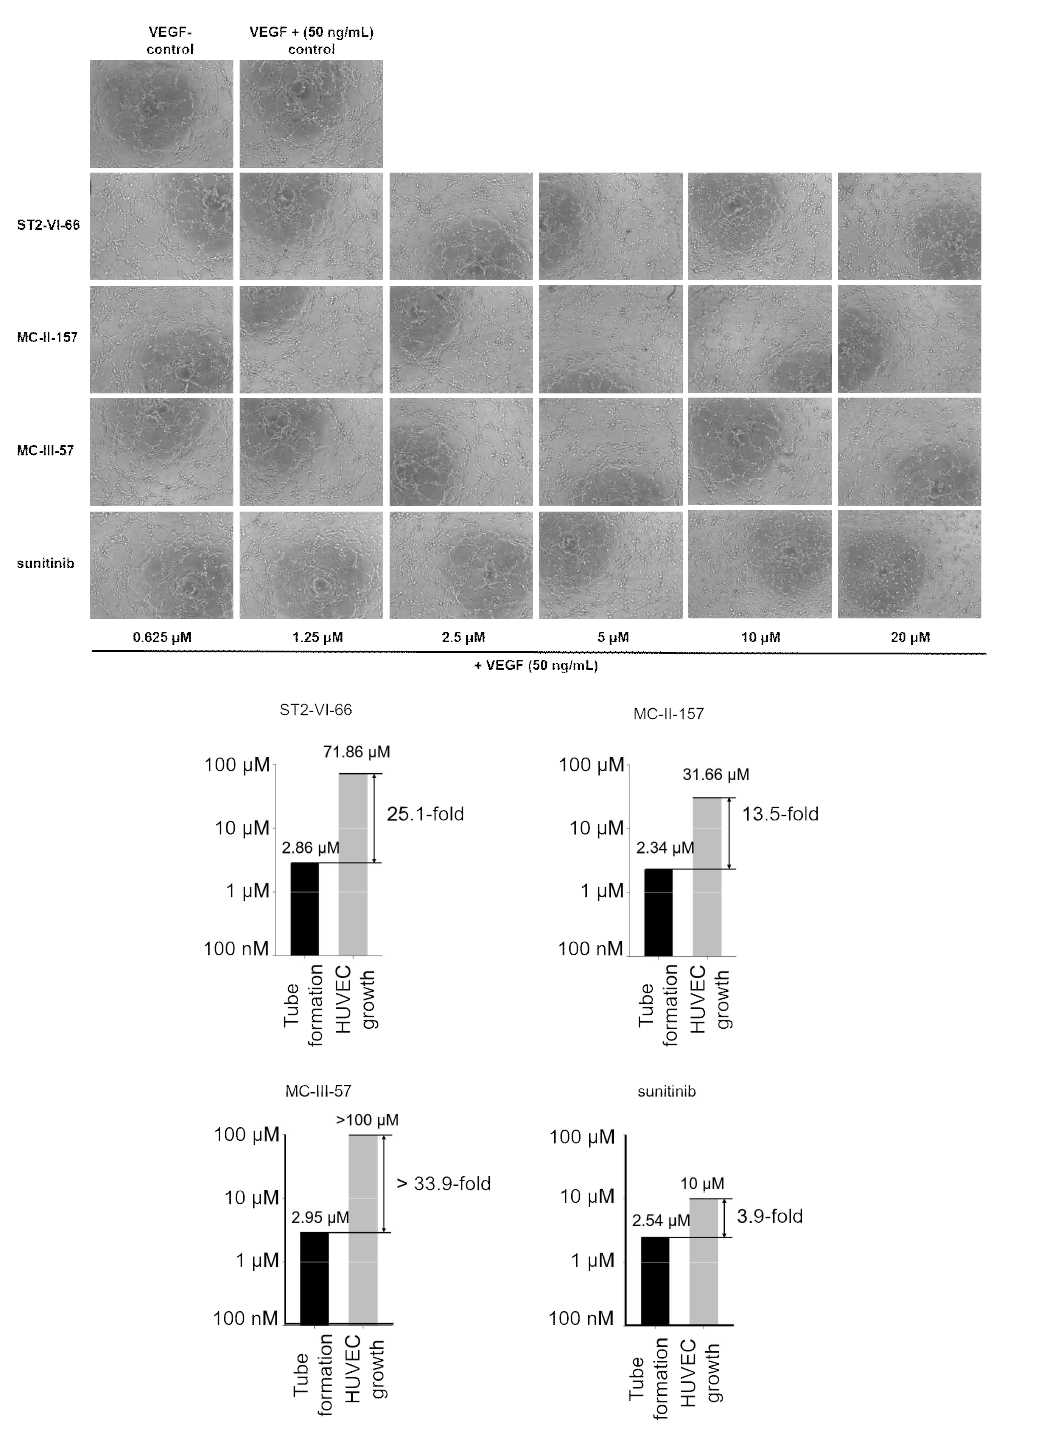 ST2-IV-66, MC-II-157, MC-III-57, sunitinib에 대한 tube formation 과 세포 독성 평가 결과